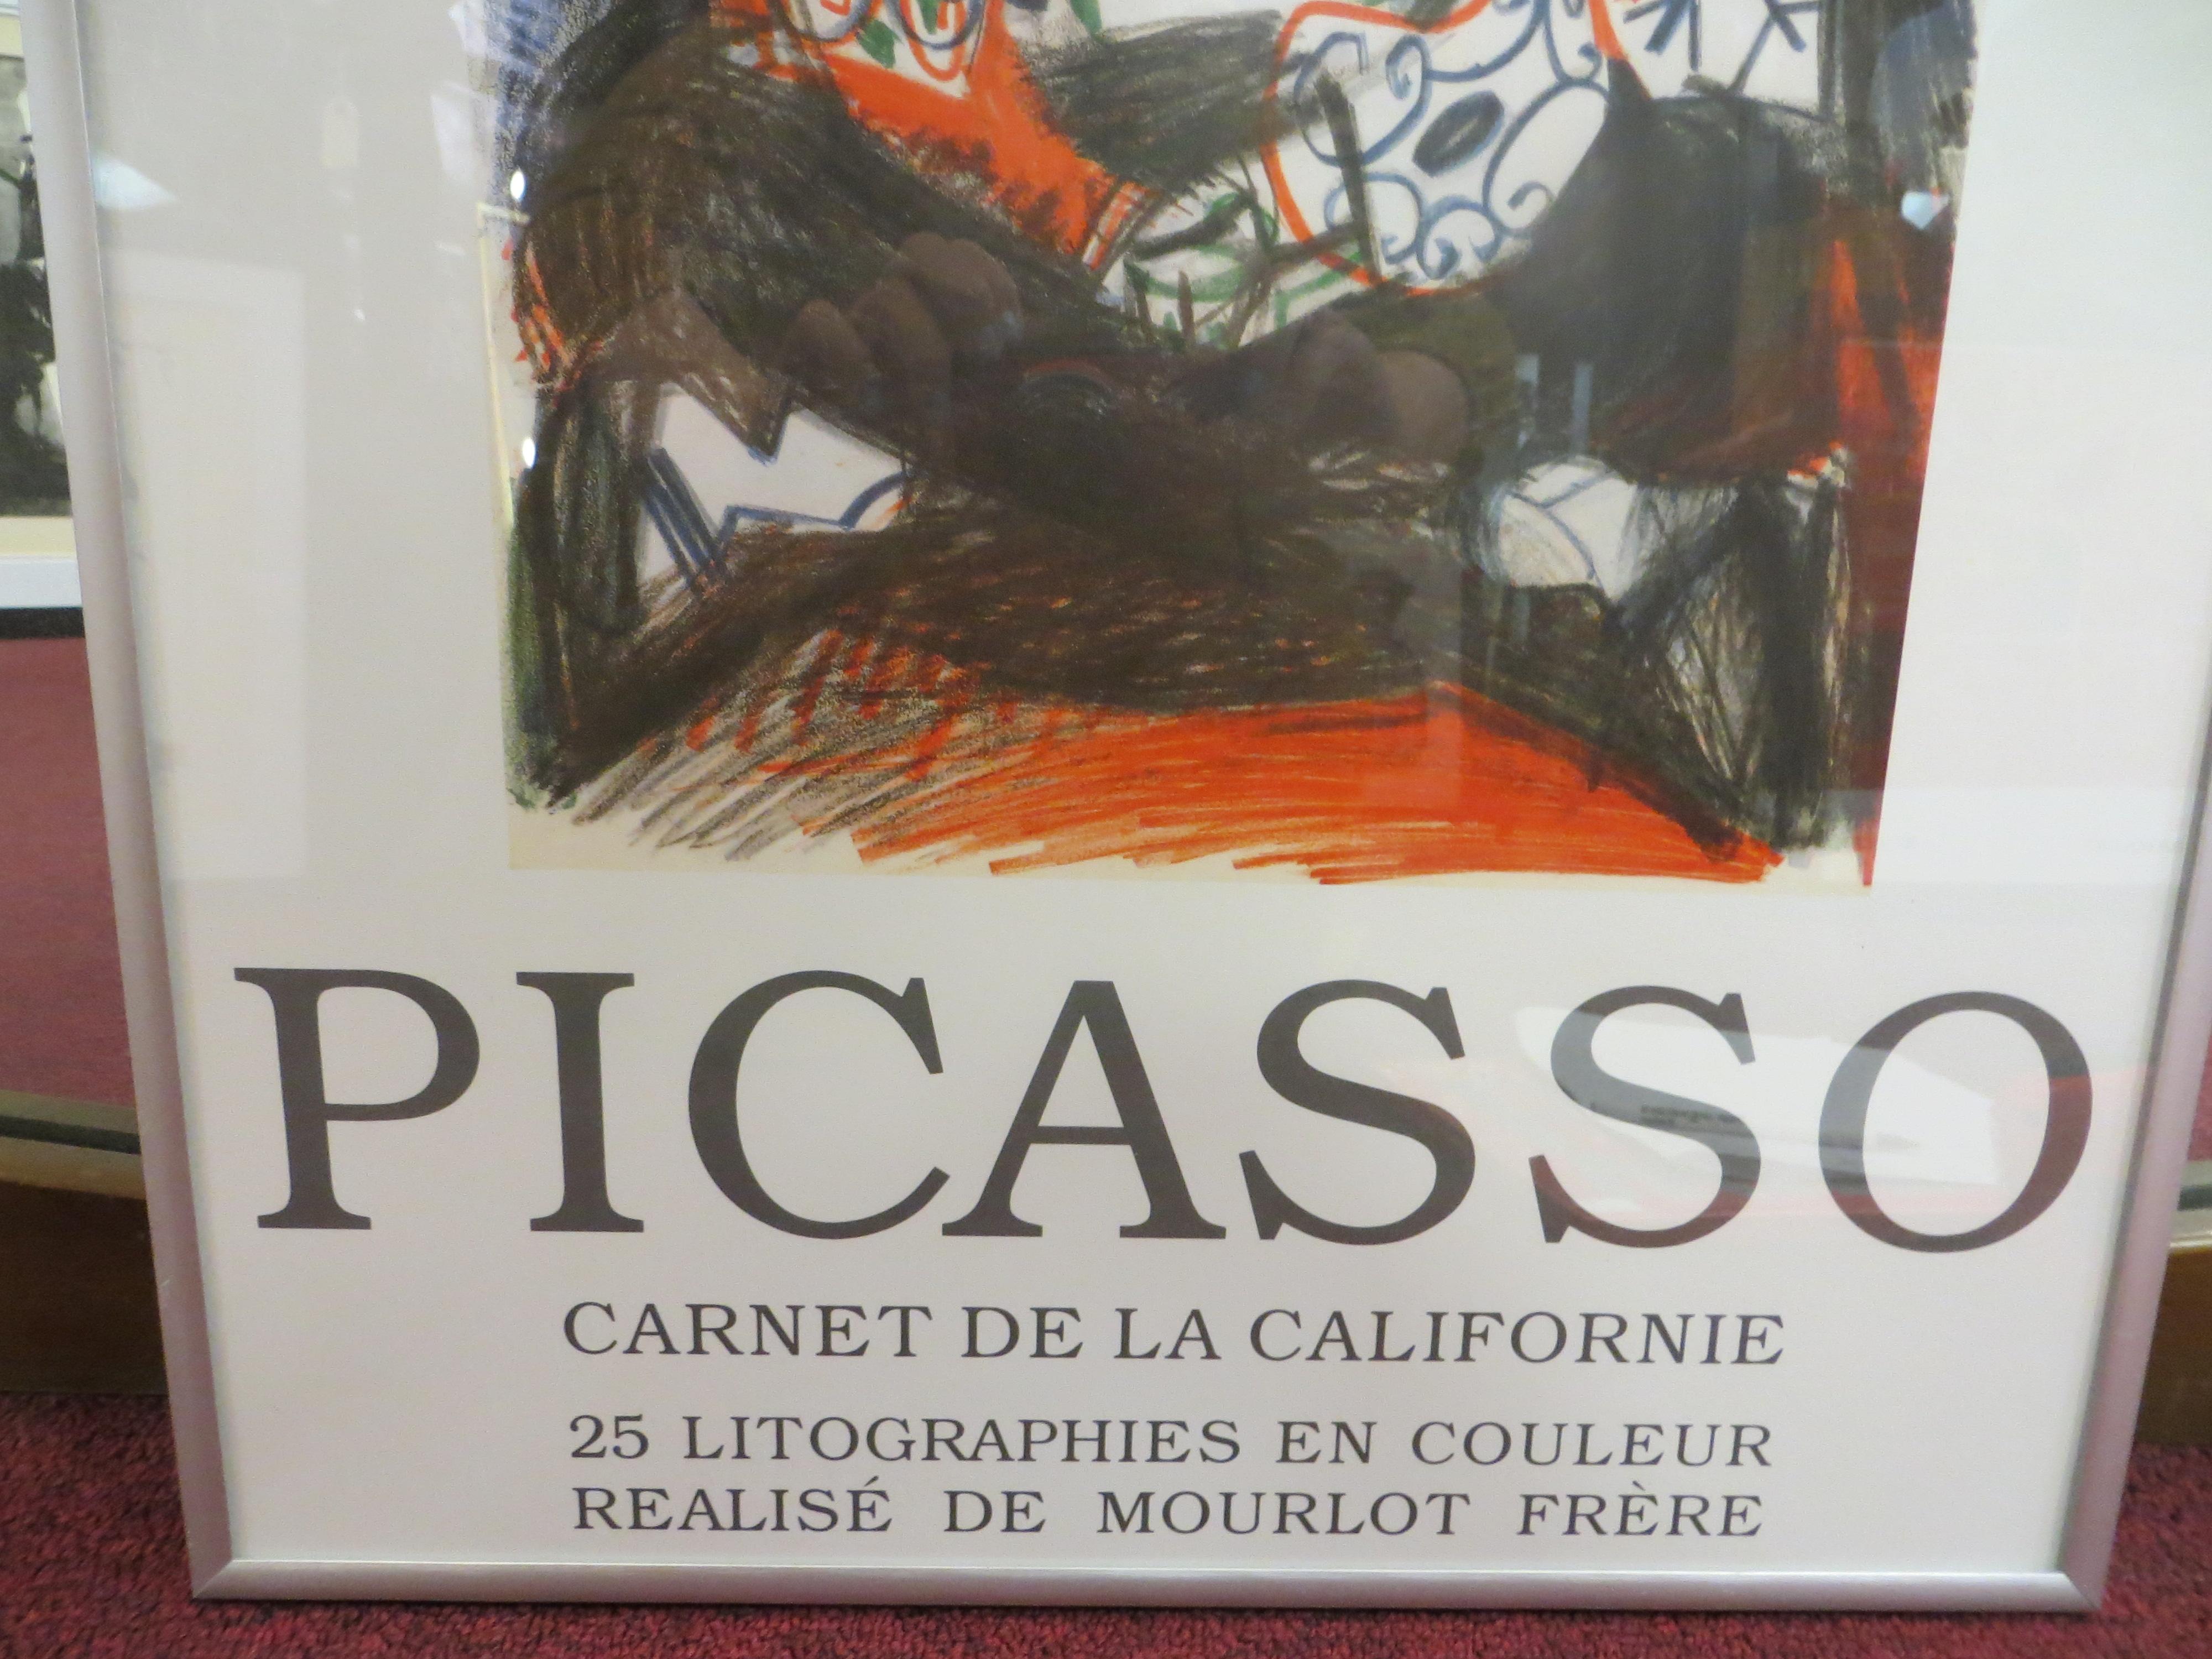 Carnet de la Californie Poster Exhibition   After Picasso - Cubist Print by Pablo Picasso